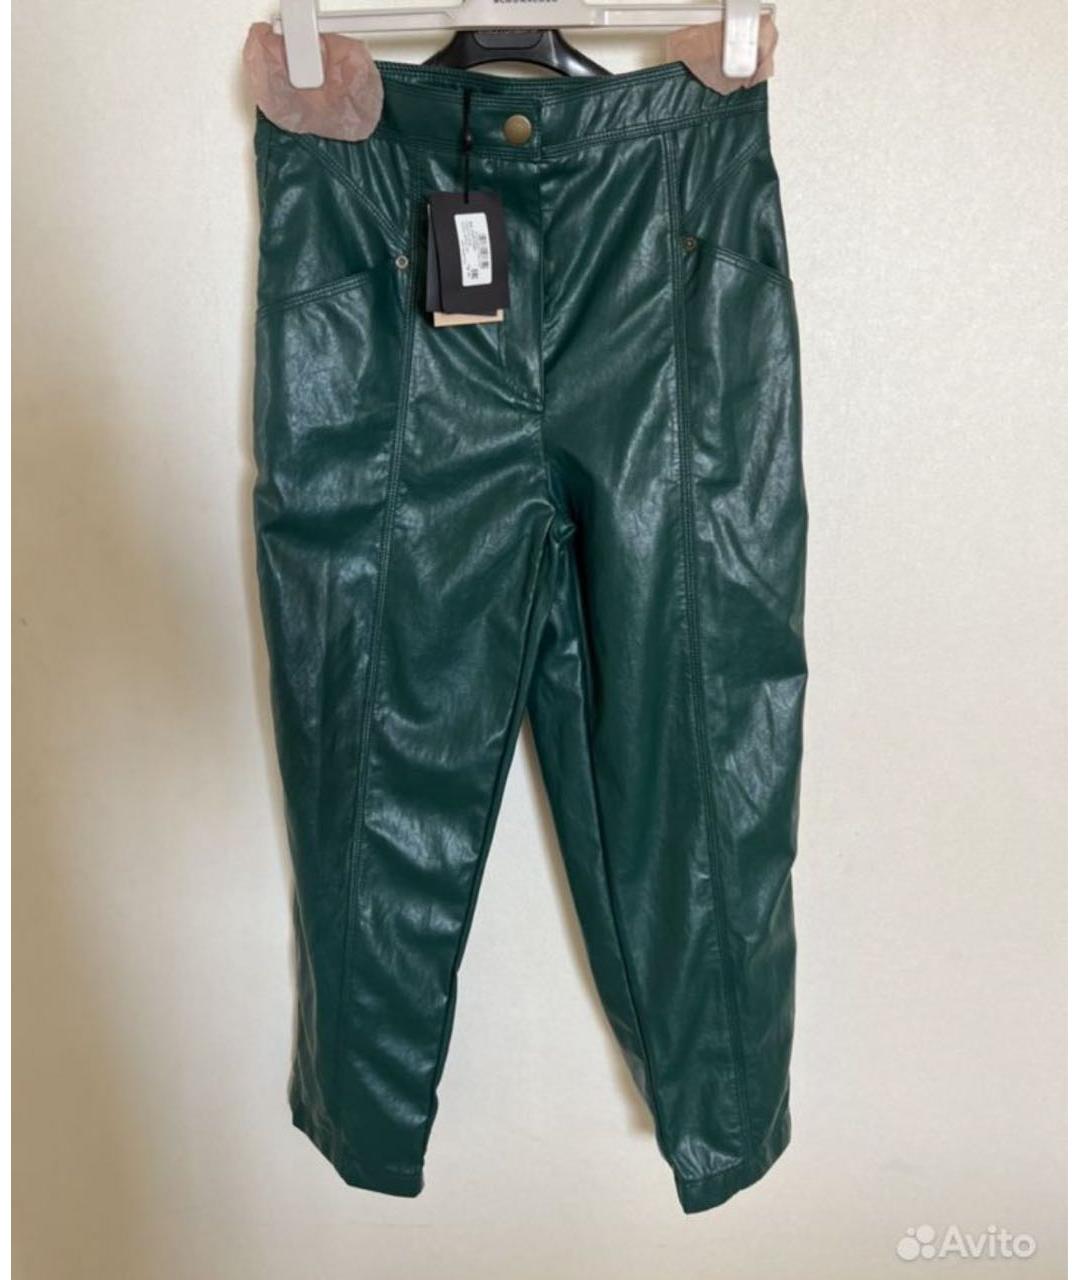 TWIN-SET Зеленые кожаные прямые брюки, фото 2